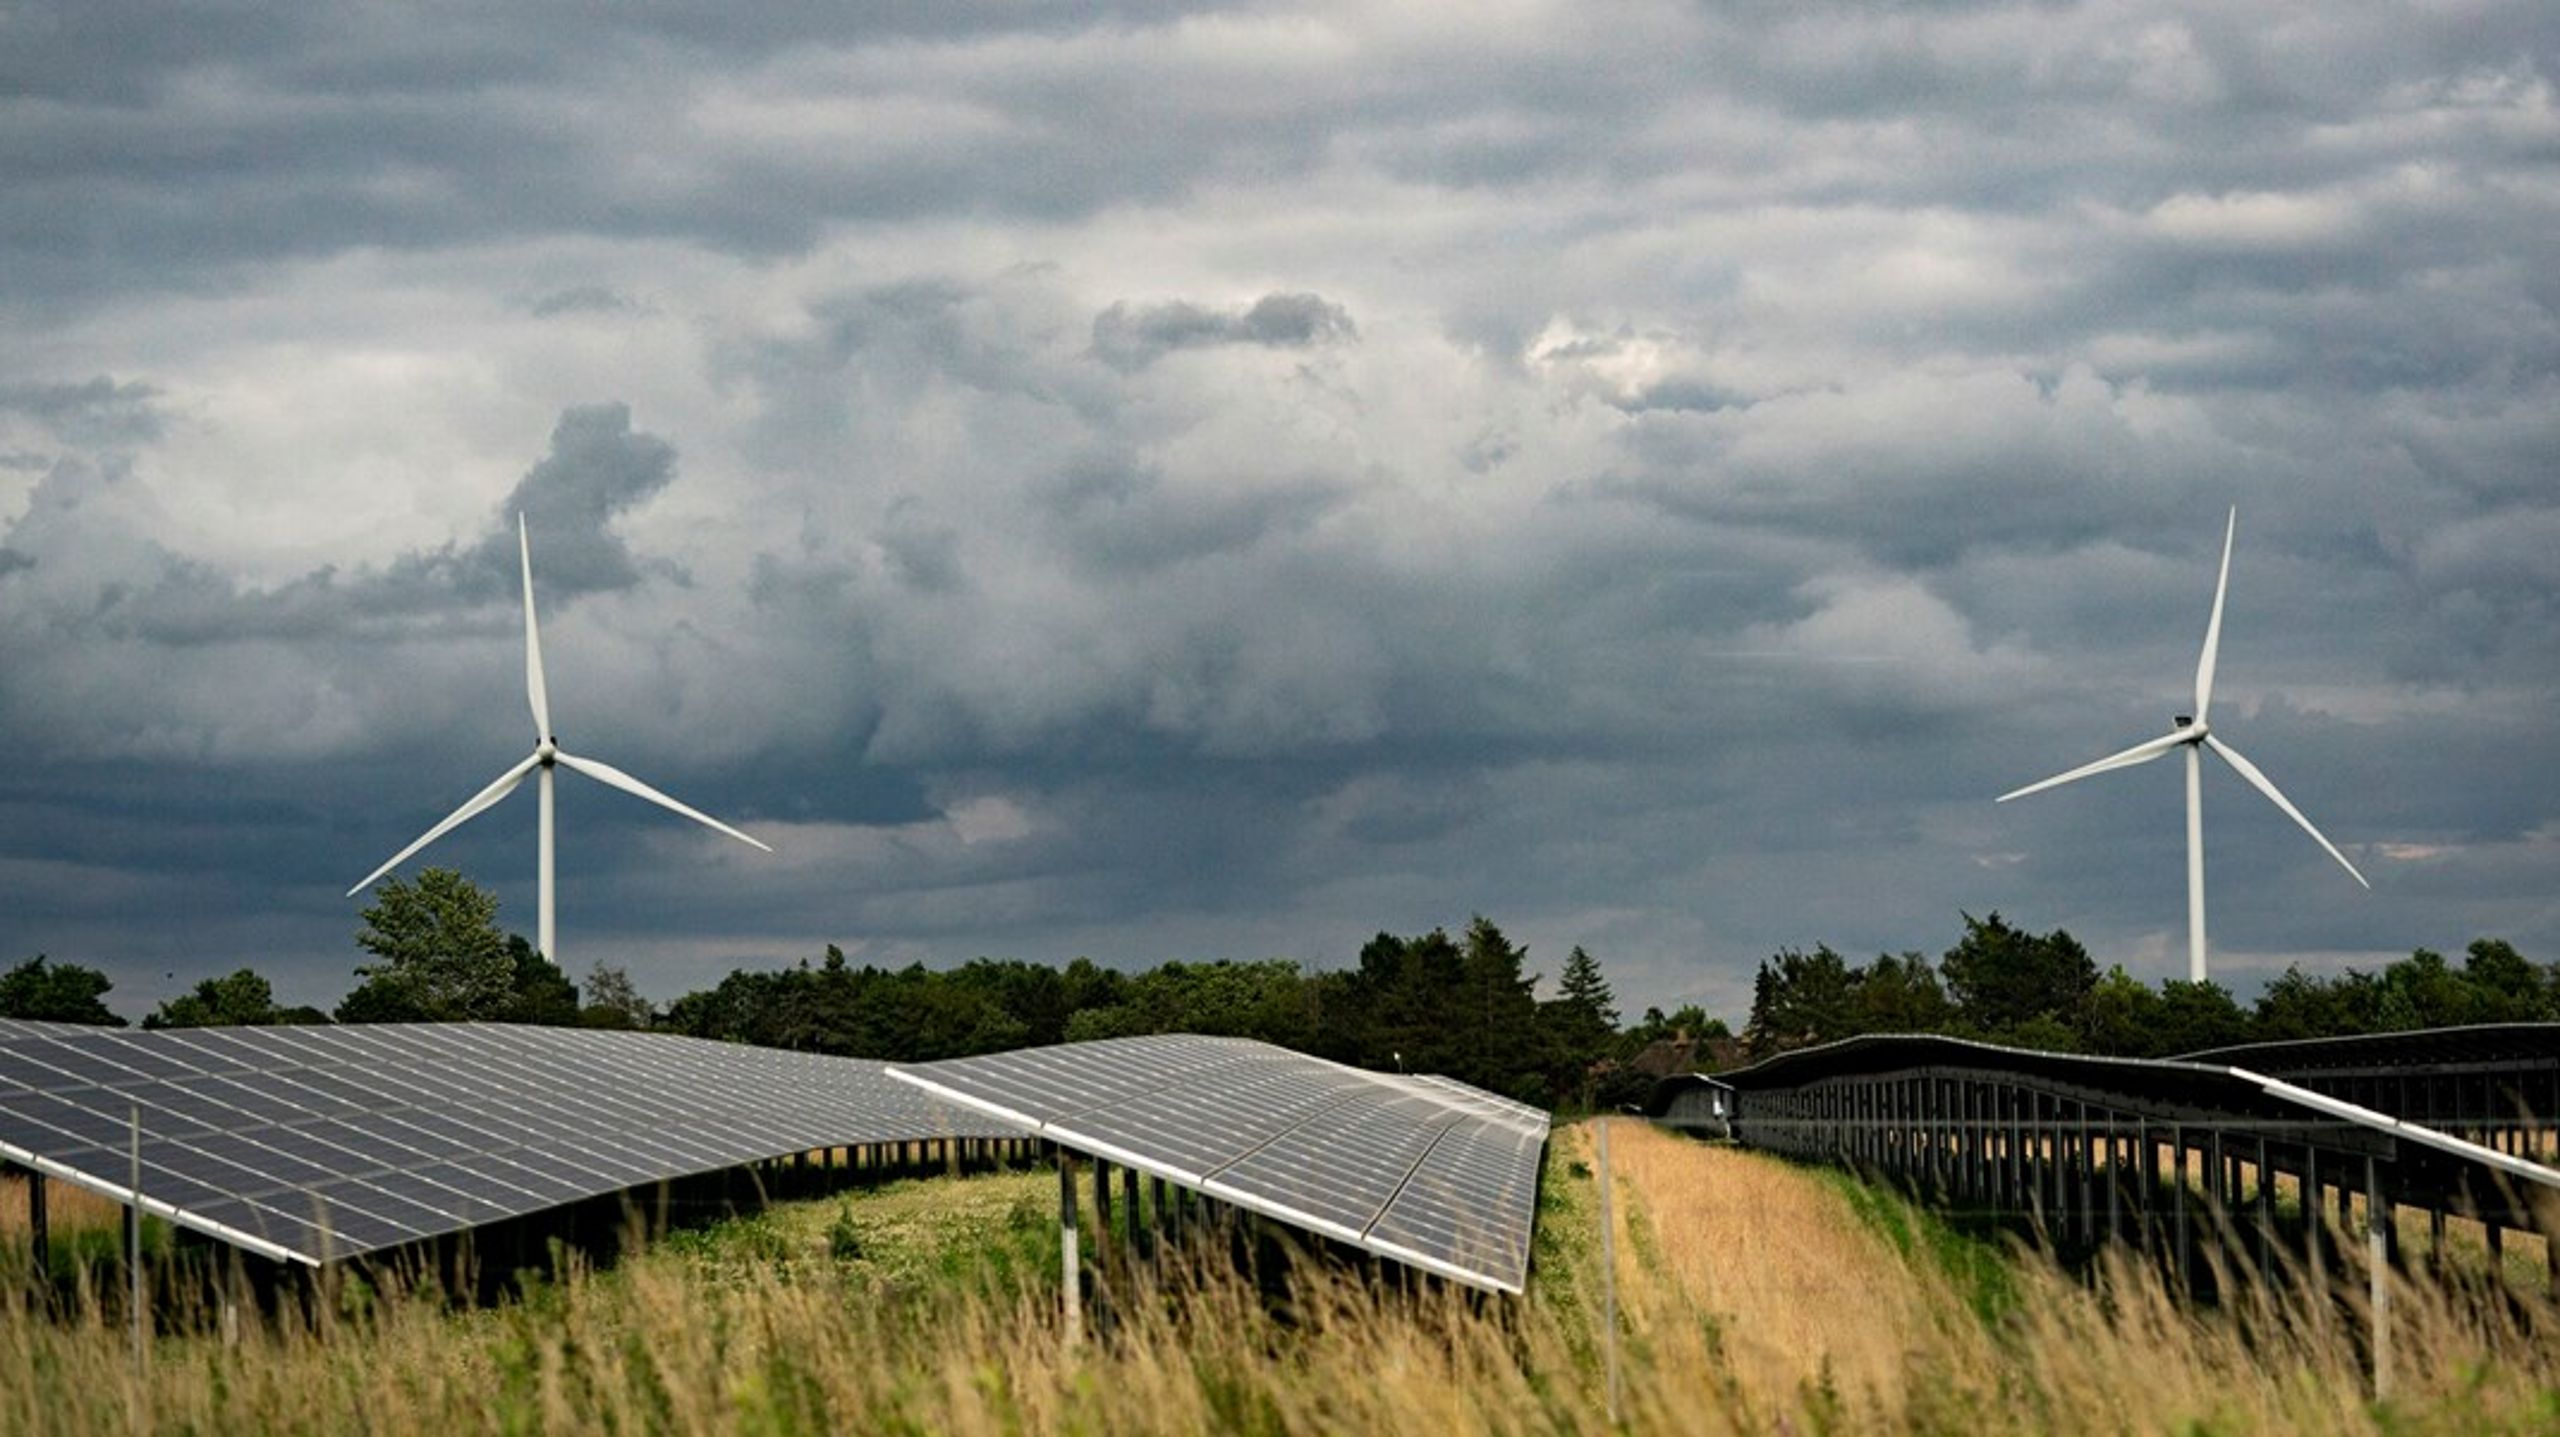 Danmarks førerposition i vedvarende og bæredygtig energi må ikke begrænses af et manglende lokalt incitament. Vi risikerer at gå glip af et grønnere, mere bæredygtigt og mere selvforsynende samfund gennem dansk produktion af vedvarende energi, skriver borgmestrene i Lemvig, Struer og Holstebro.